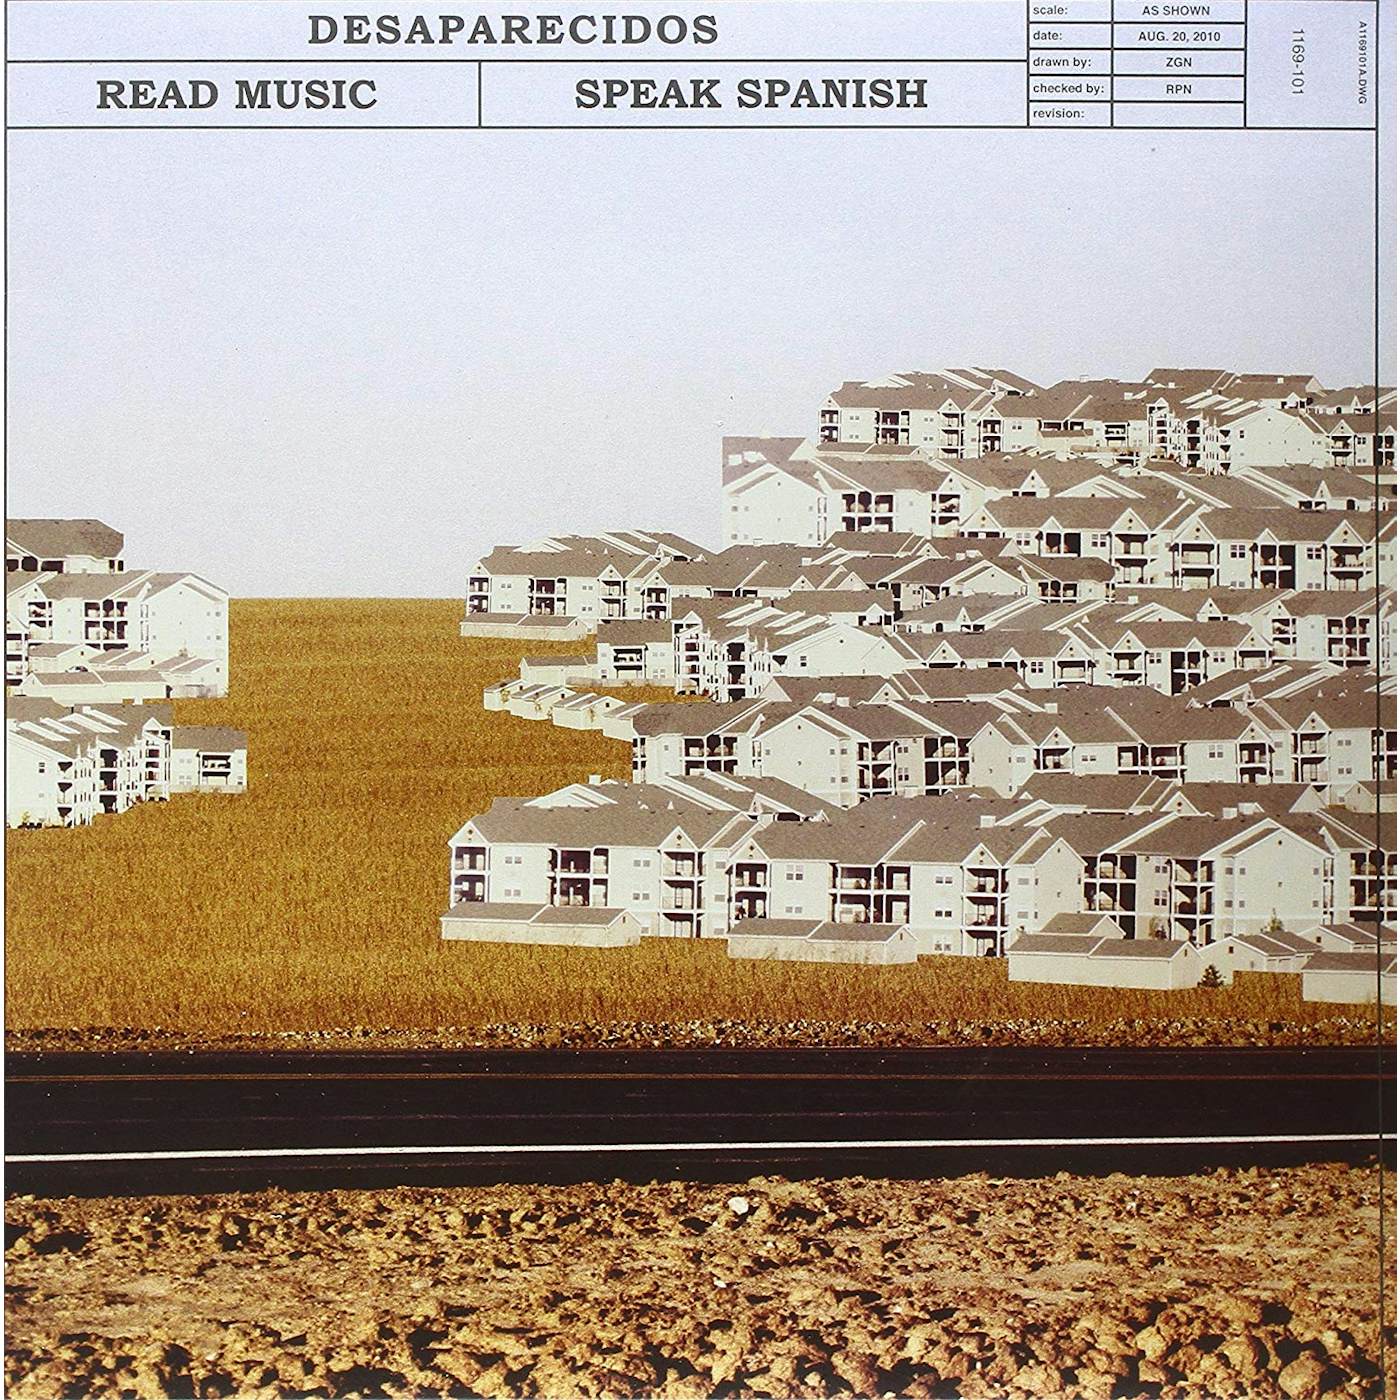 Desaparecidos Read Music Speak Spanish (Includes Download Card) Vinyl Record